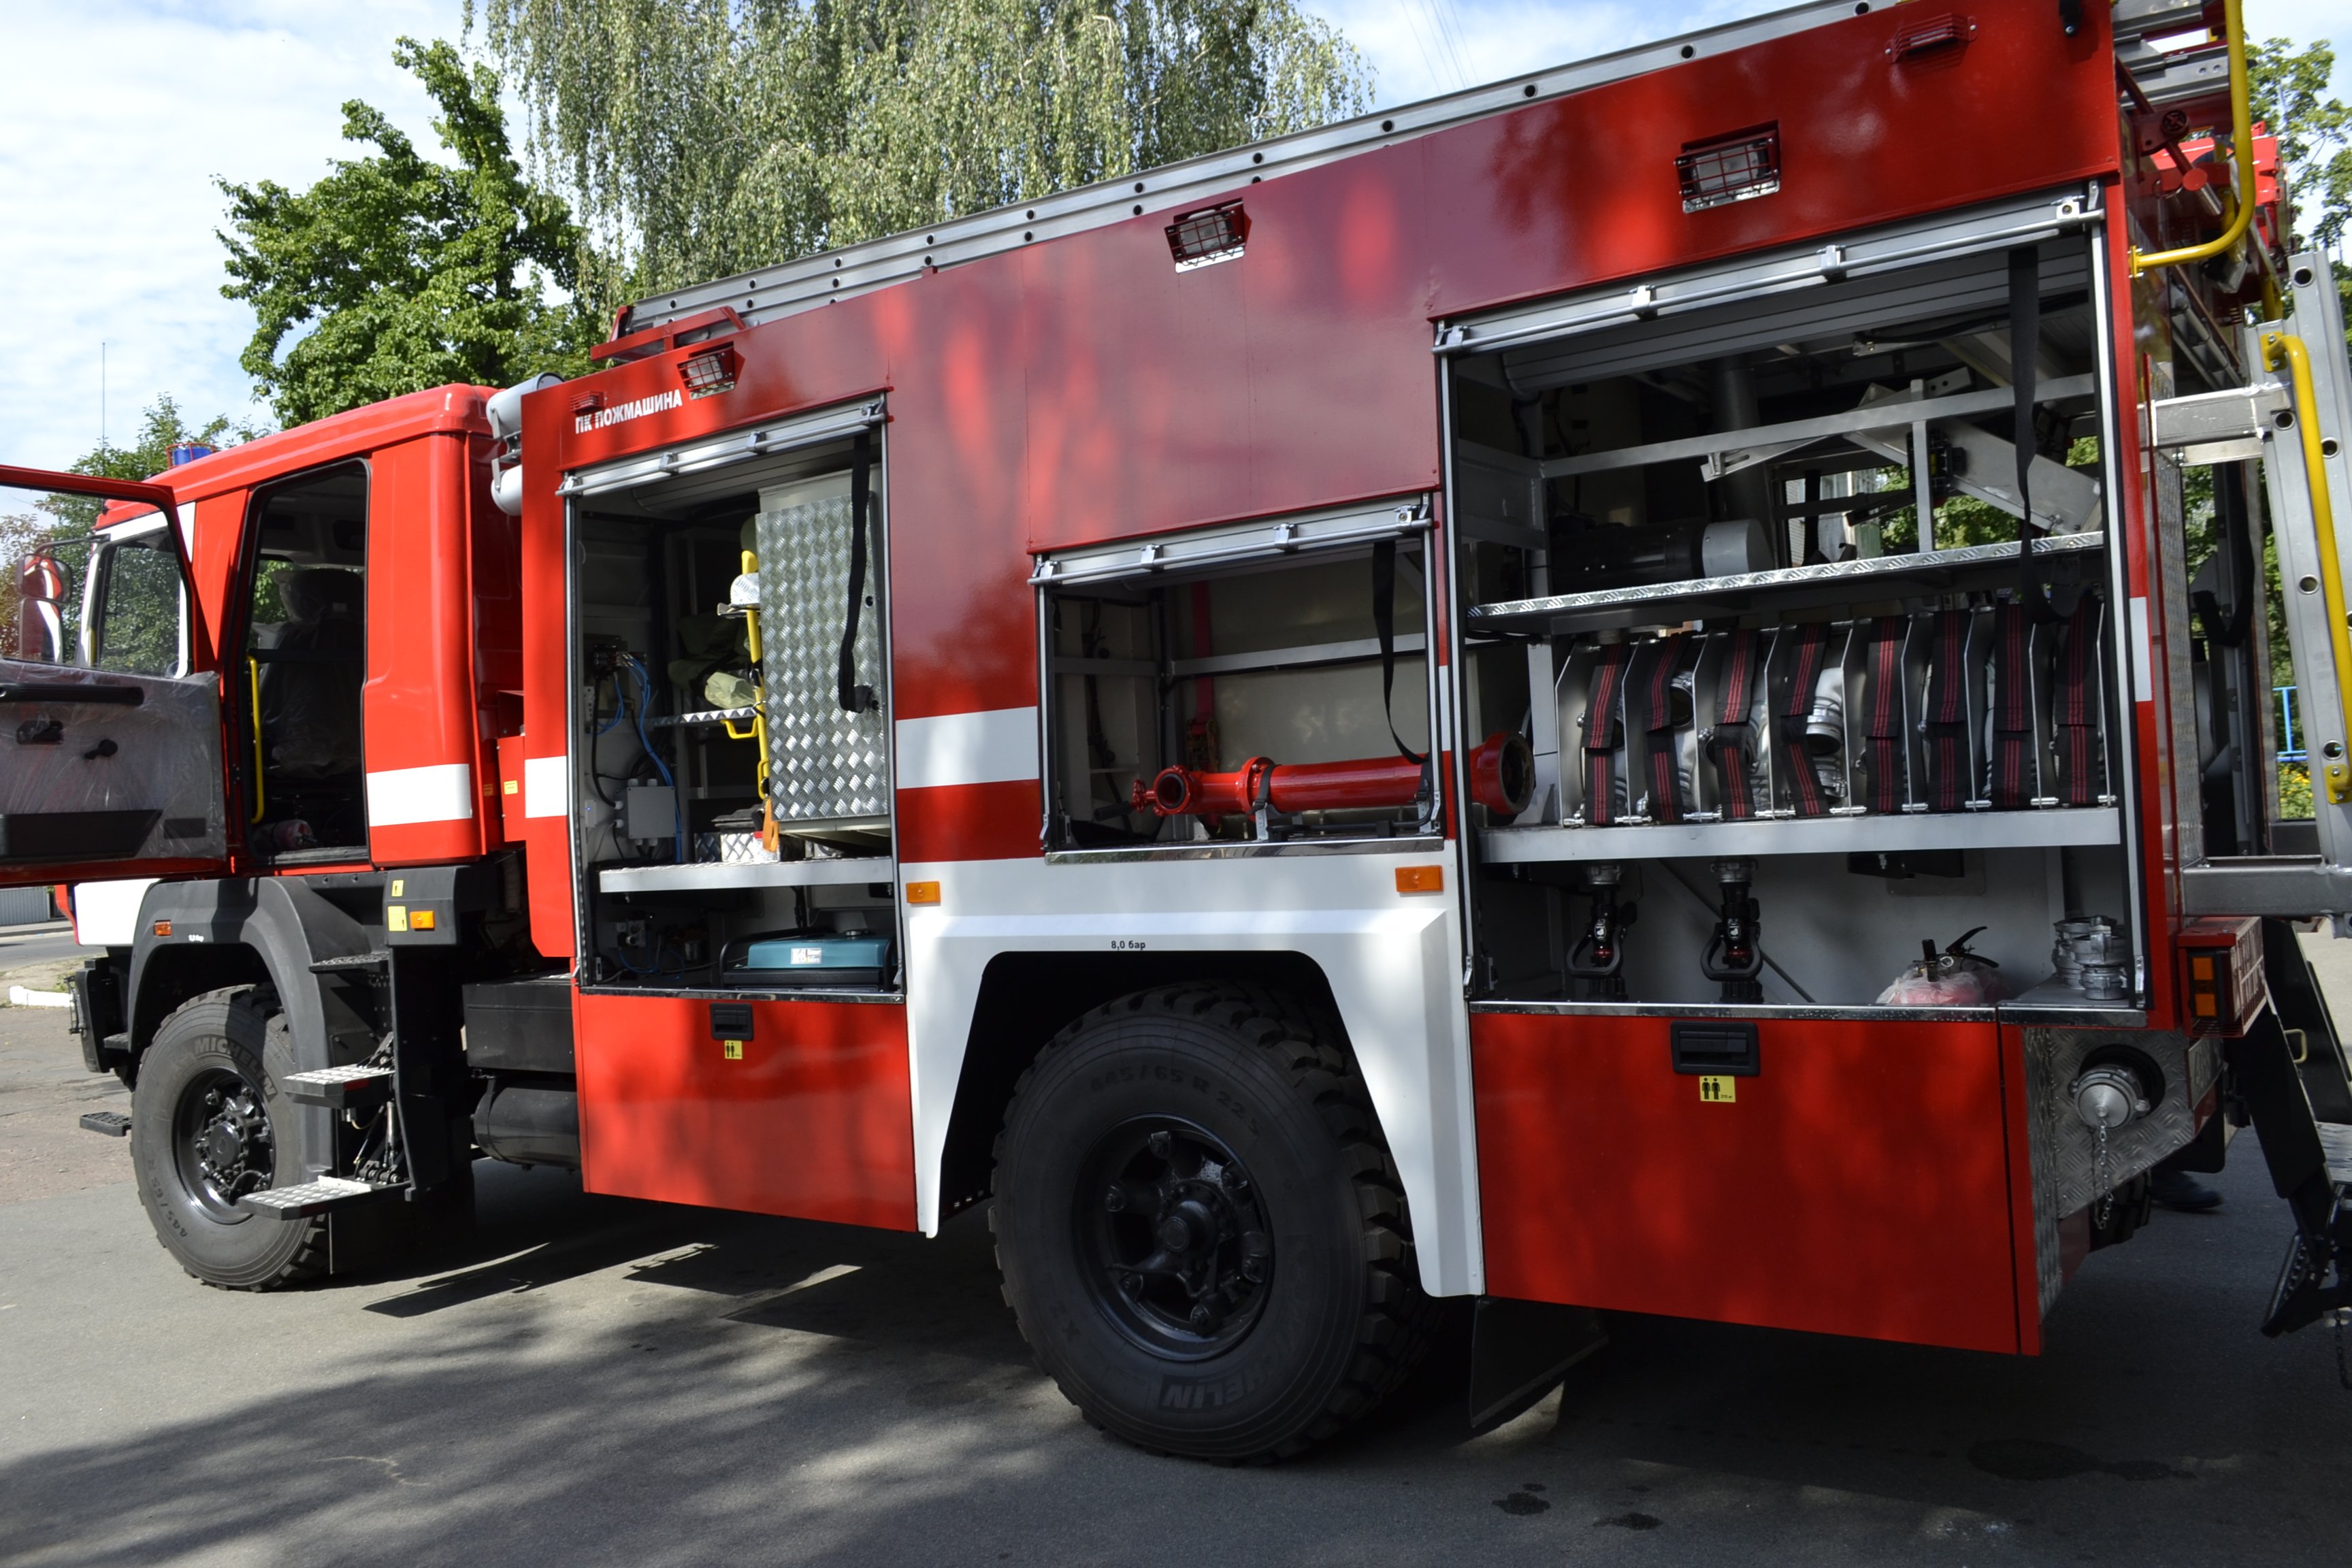 То пожарных автомобилей проводится. АПС пожарная машина. АПС 14 машина пожарная. АЦ-3.0-40 43206. Пожарная машина настоящая.